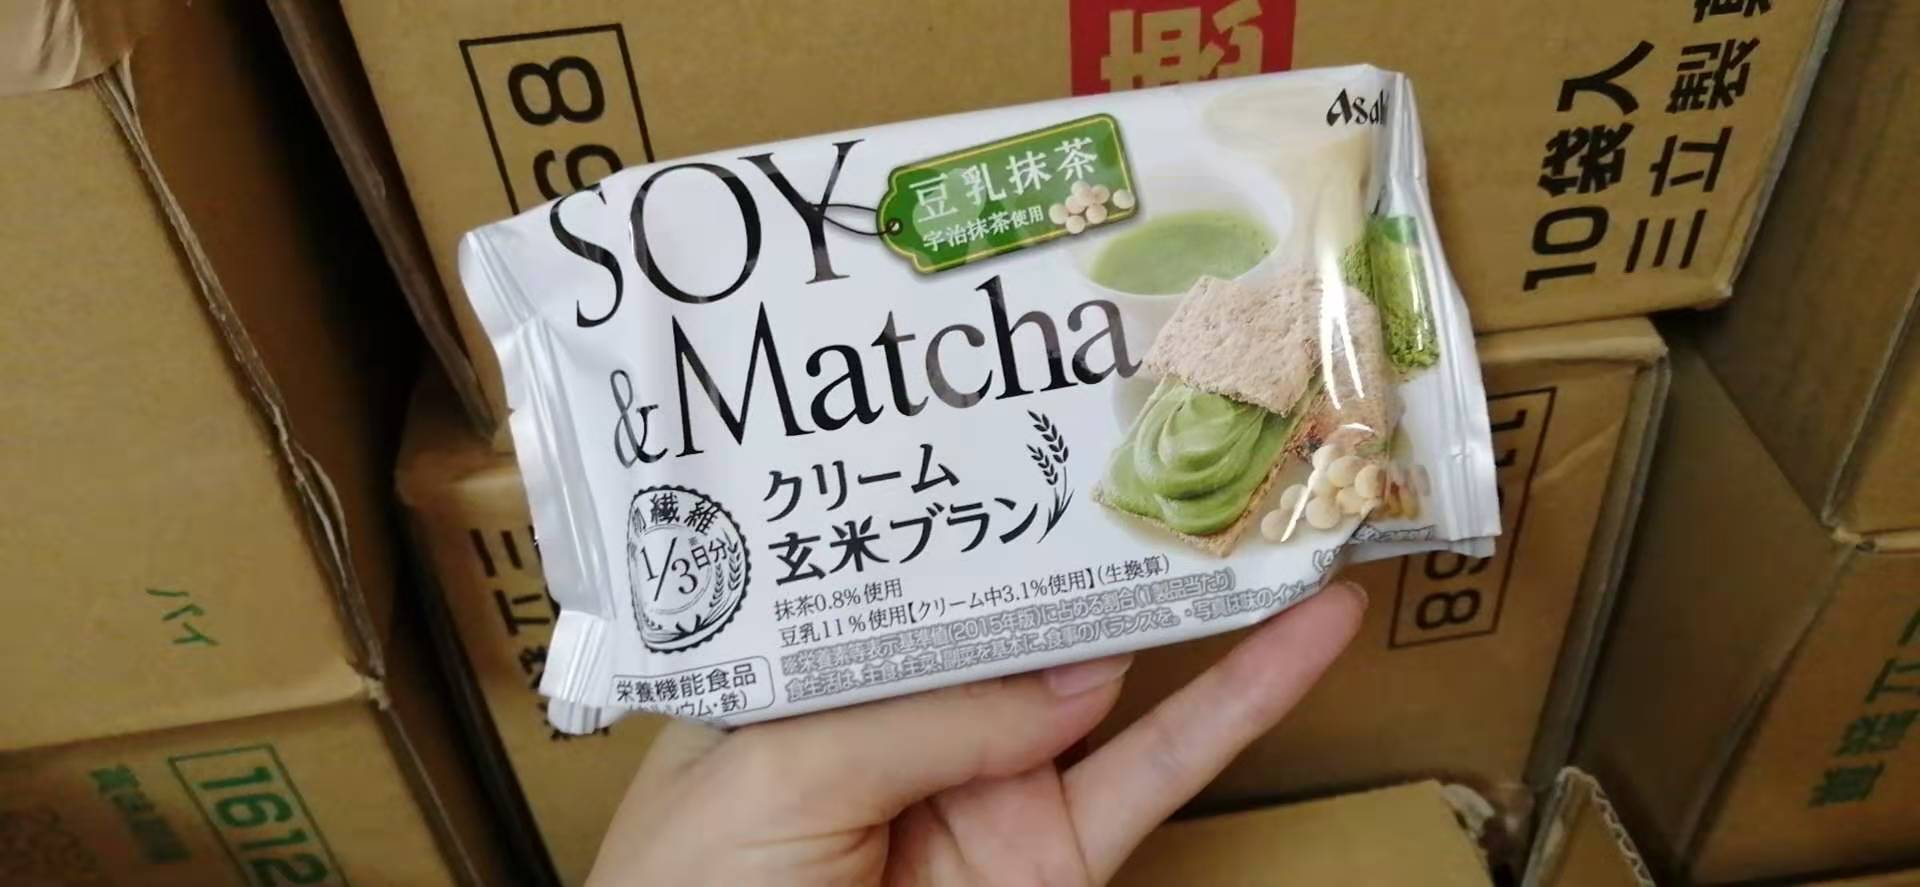 ขนมญี่ปุ่น Soy&matcha ชาเขียว และนมถั่วเหลือง Asahi Cracker แครกเกอร์ข้าวกล้อง, รำข้าวสาลี  ขนมสุขภาพ มีวิตามินและแร่ธาตุ